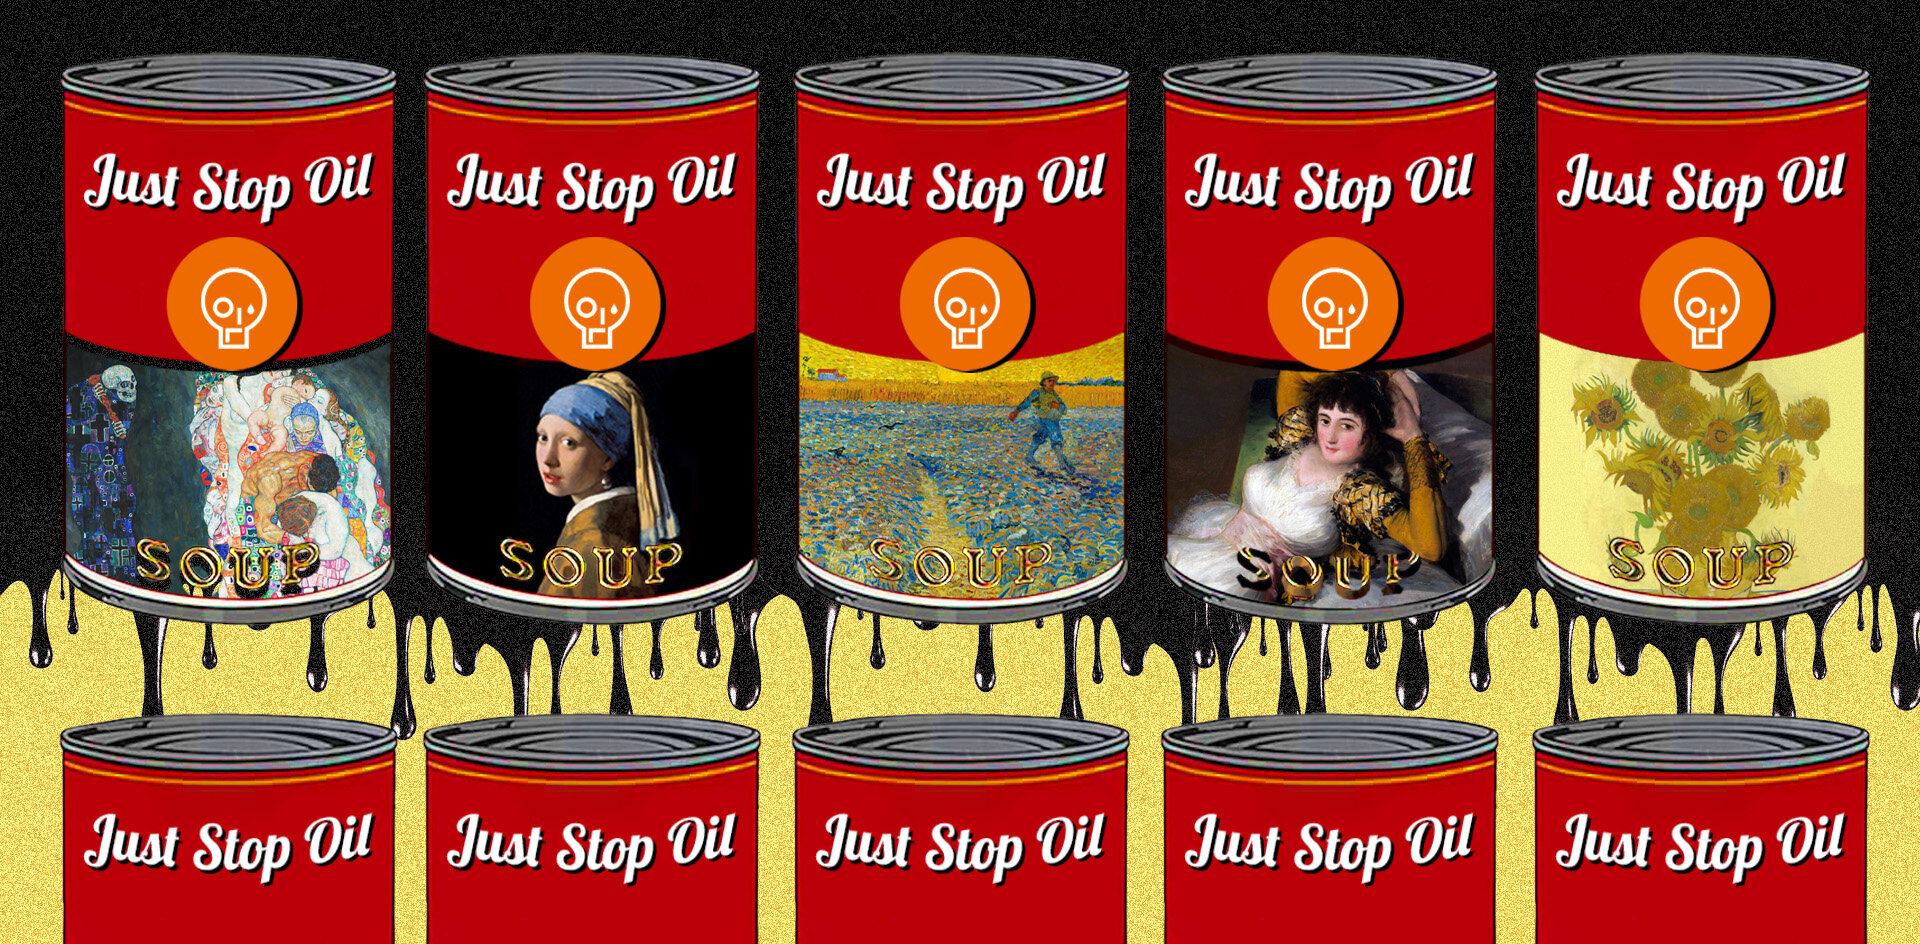 Суп для порчи мировых шедевров оплачивают нефтяники